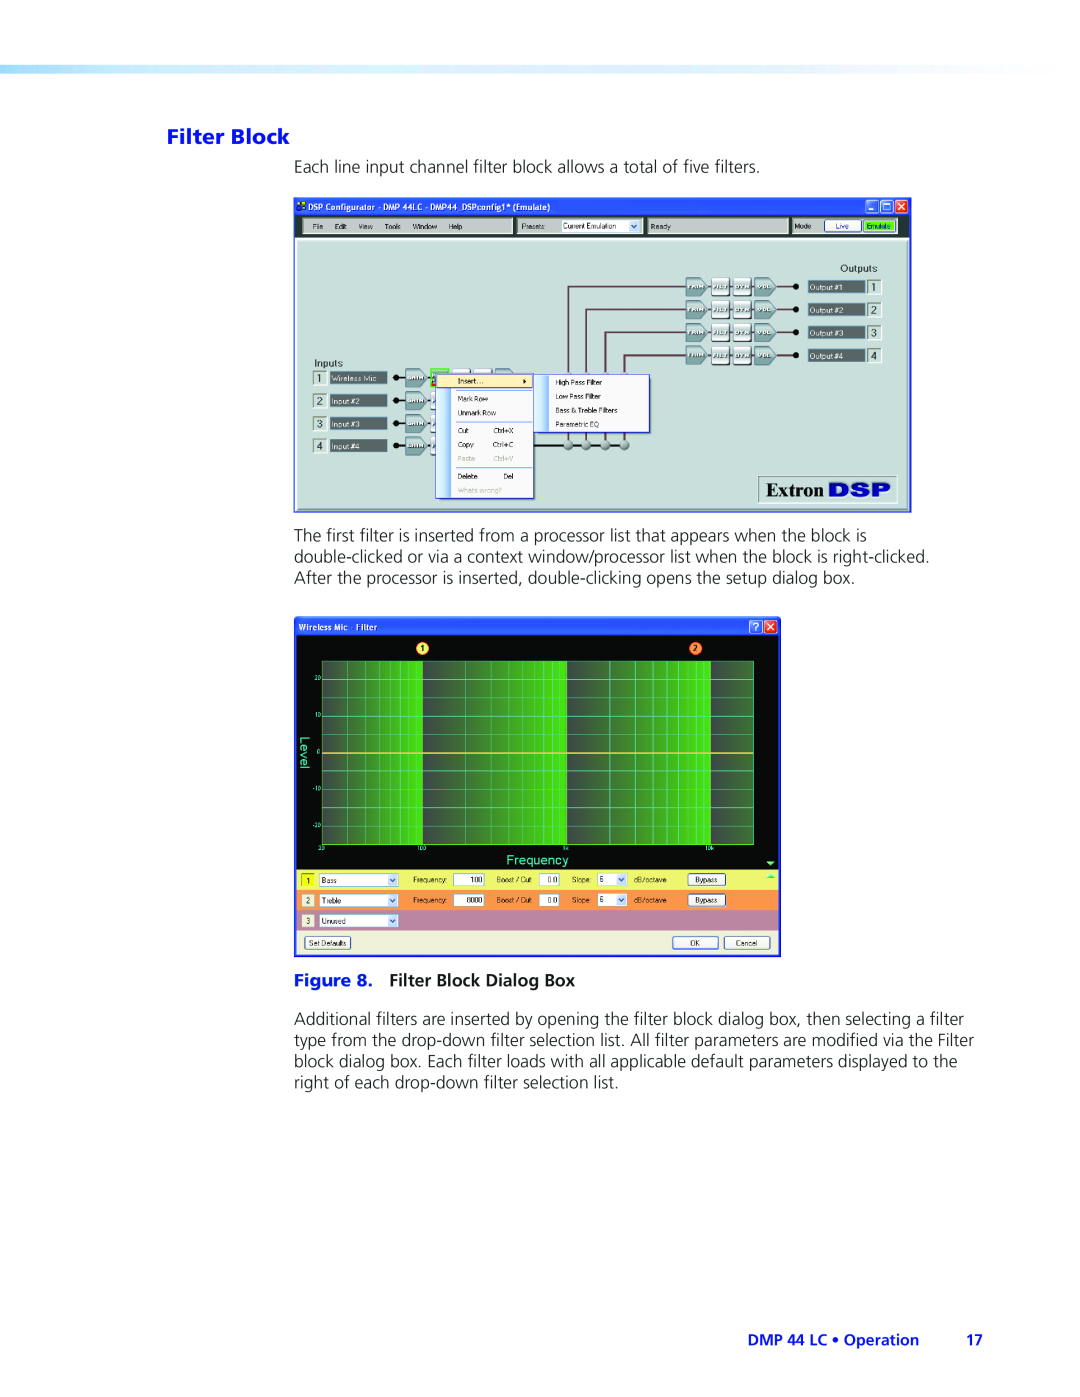 Extron electronic DMP 44 LC manual Filter Block Dialog Box 